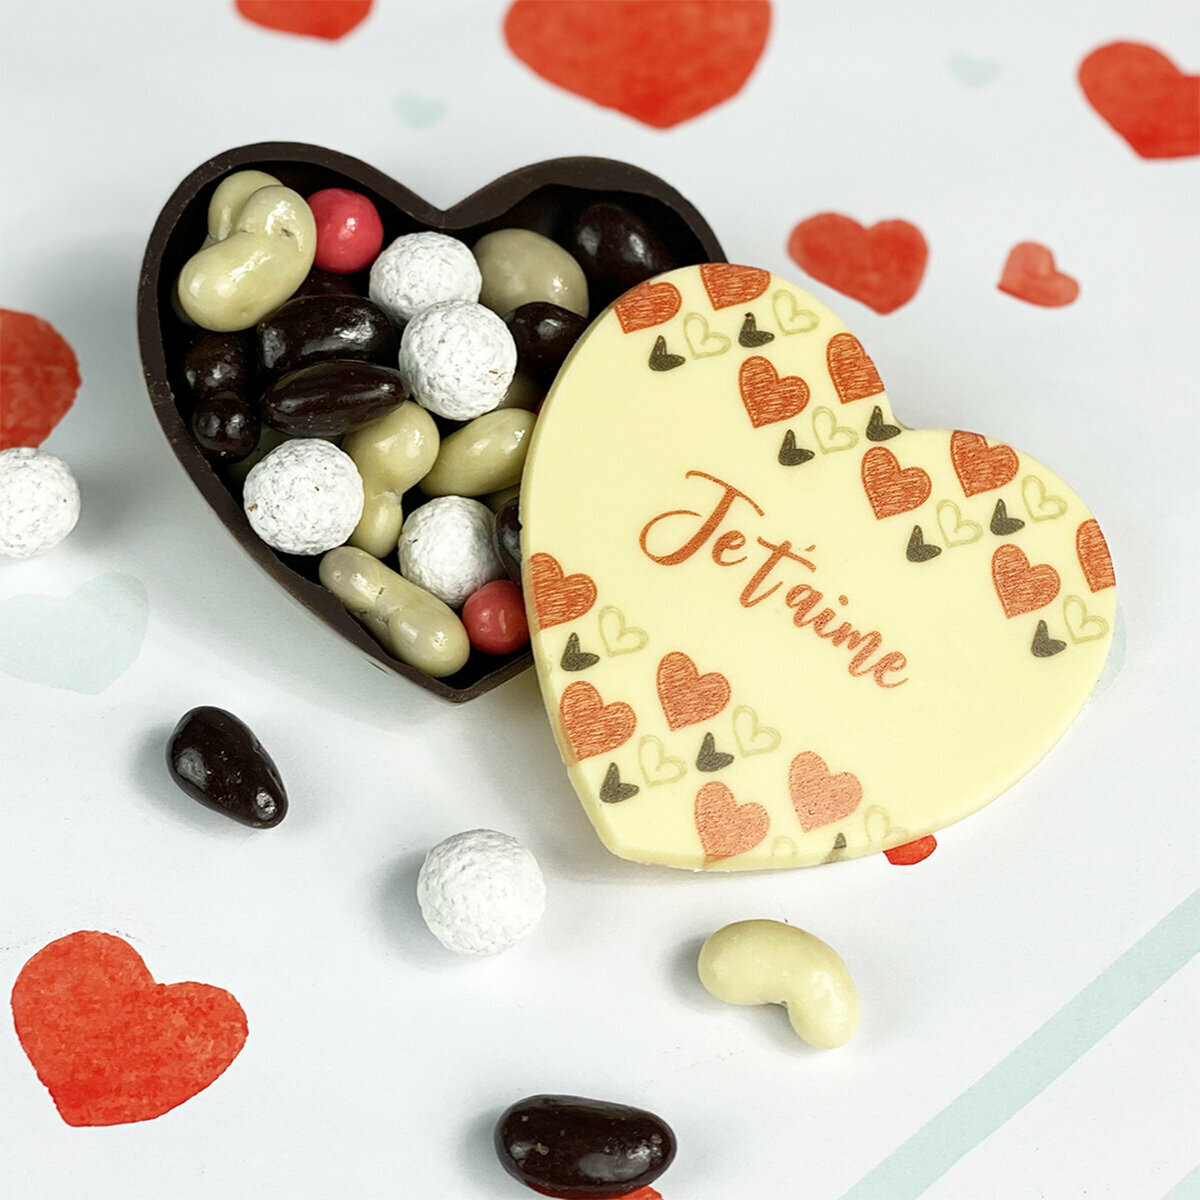 Coffret forme Coeur plat tout Chocolat pour la Saint Valentin avec  Gourmandises